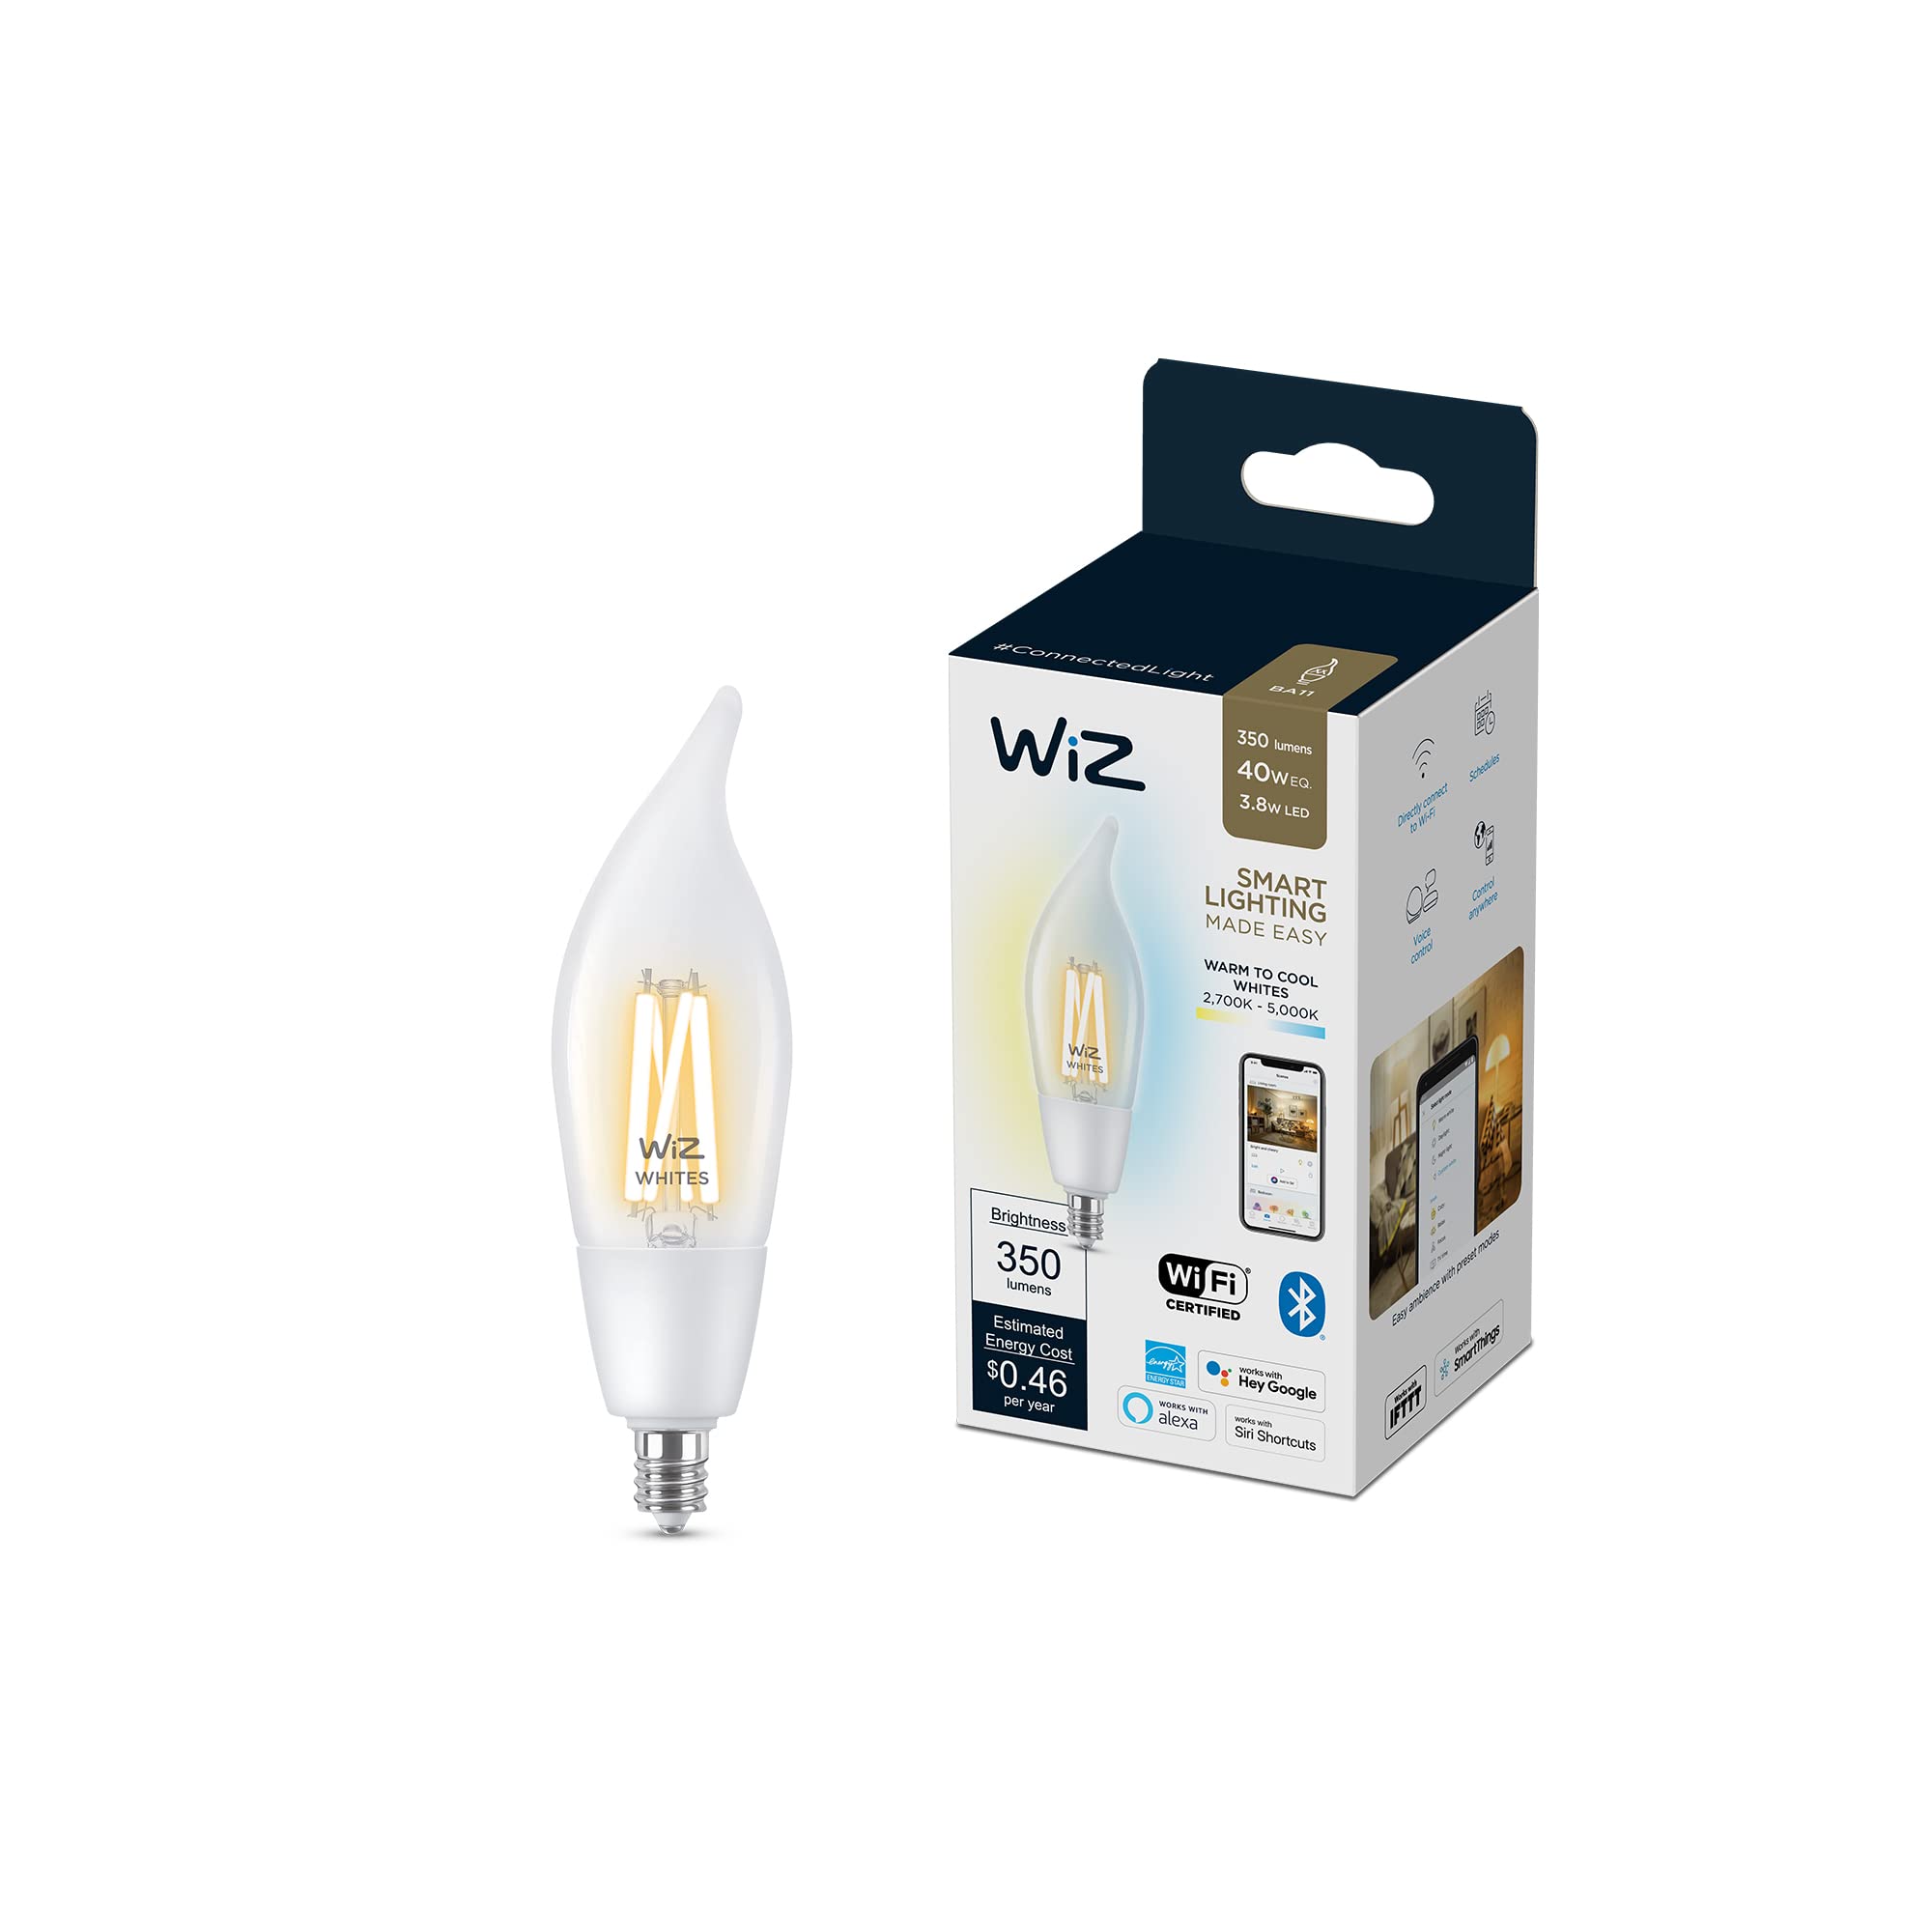 Wiz Connected Color B12 Smart WiFi Light Bulb with E26 Cap, 2200K - 6500K + RGB, 16 Million Colors, Smart Control App